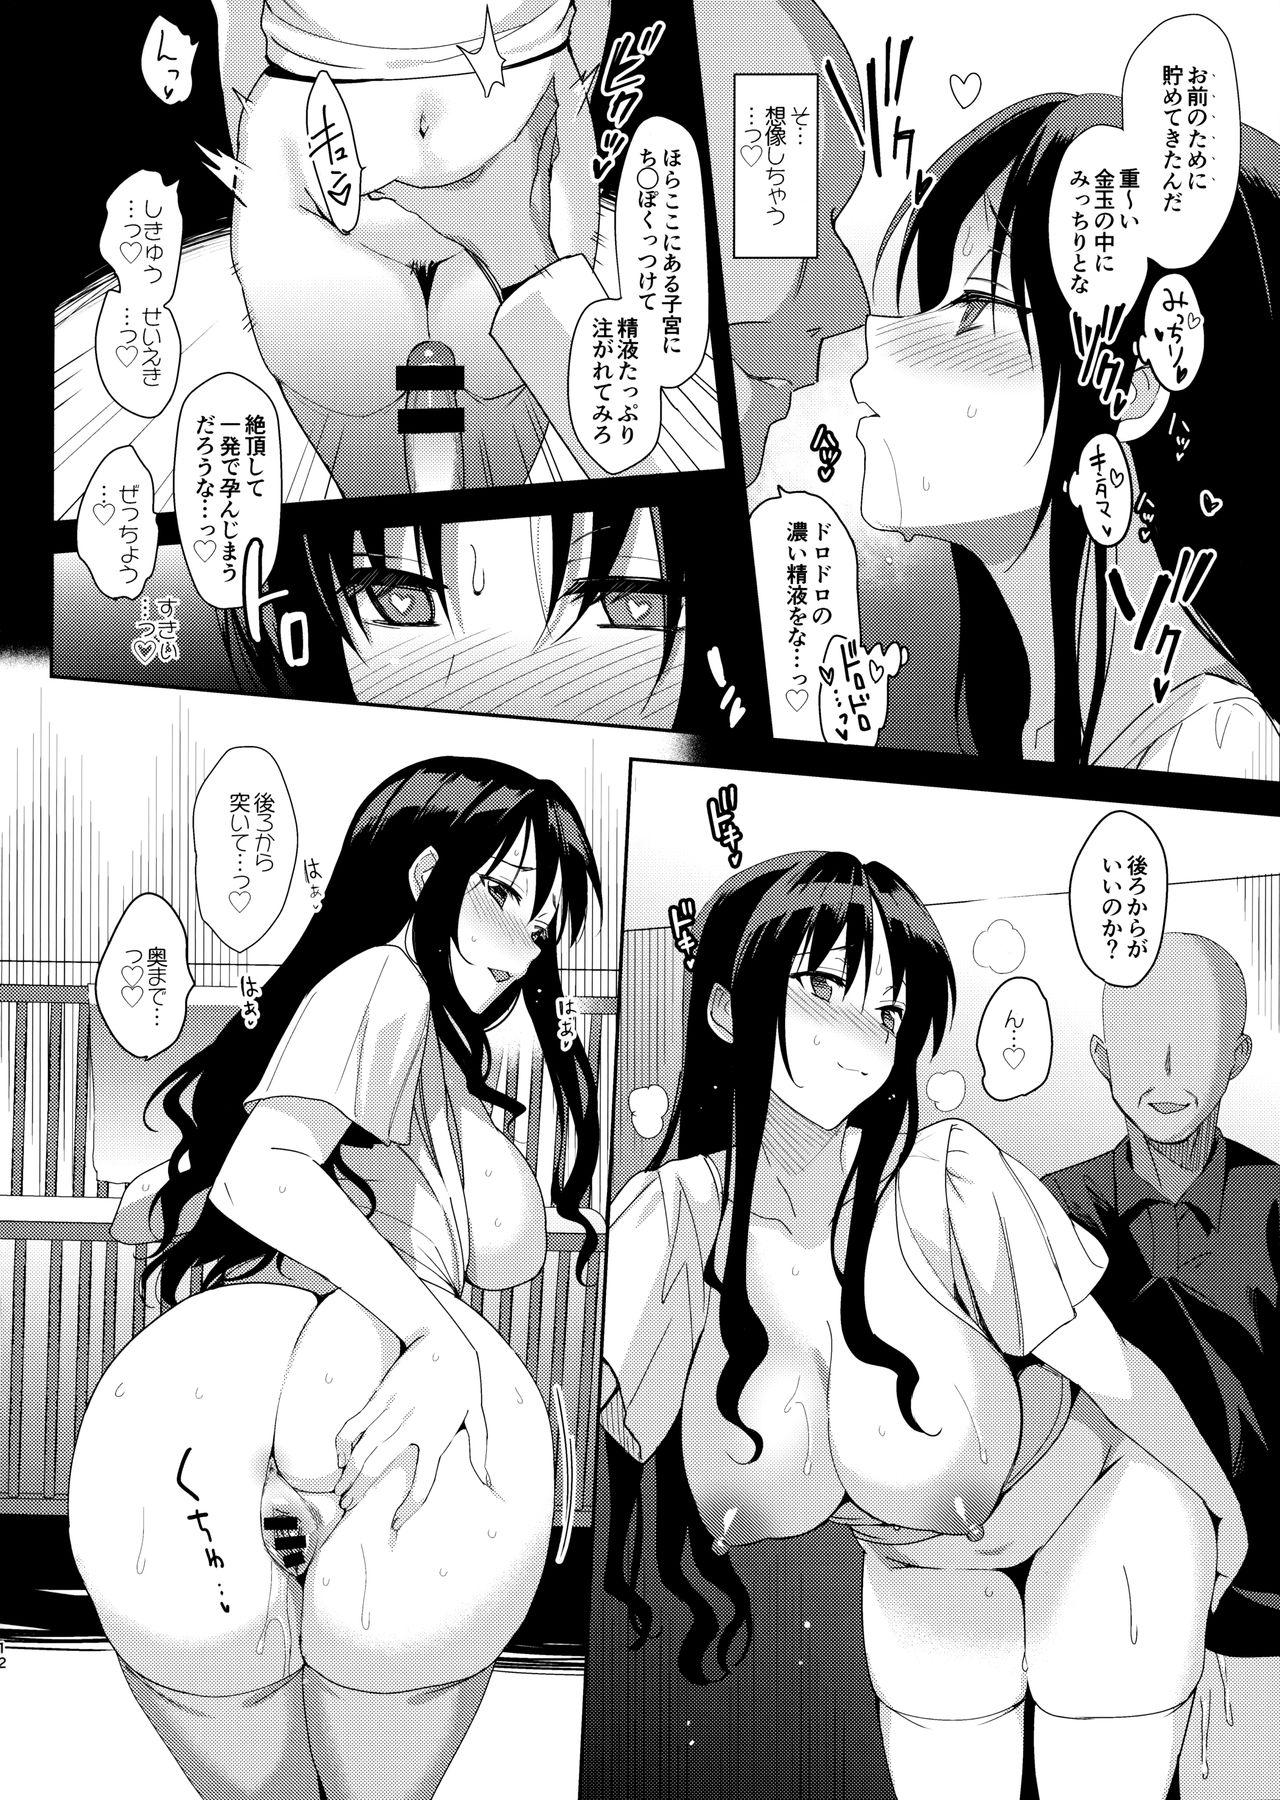 Big Dick Mesmerism 6 + Mesmerism x Kusakabe Yuiko - Original Hard Core Free Porn - Page 11